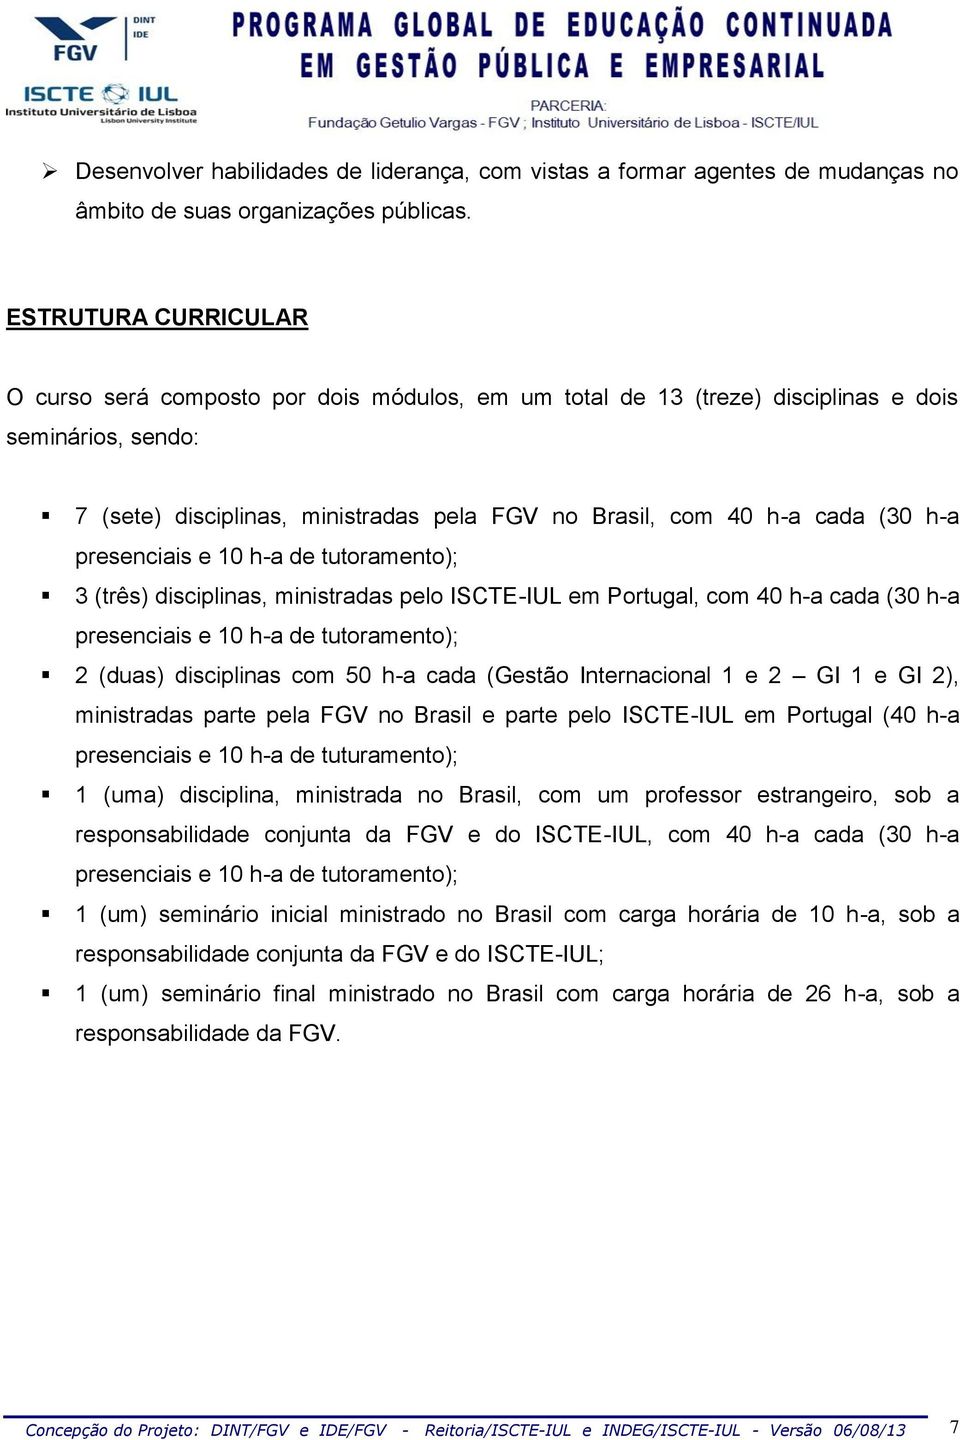 presenciais e 0 h-a de tutoramento); 3 (três) disciplinas, ministradas pelo ICT-IUL em Portugal, com 40 h-a cada (30 h-a presenciais e 0 h-a de tutoramento); 2 (duas) disciplinas com 50 h-a cada